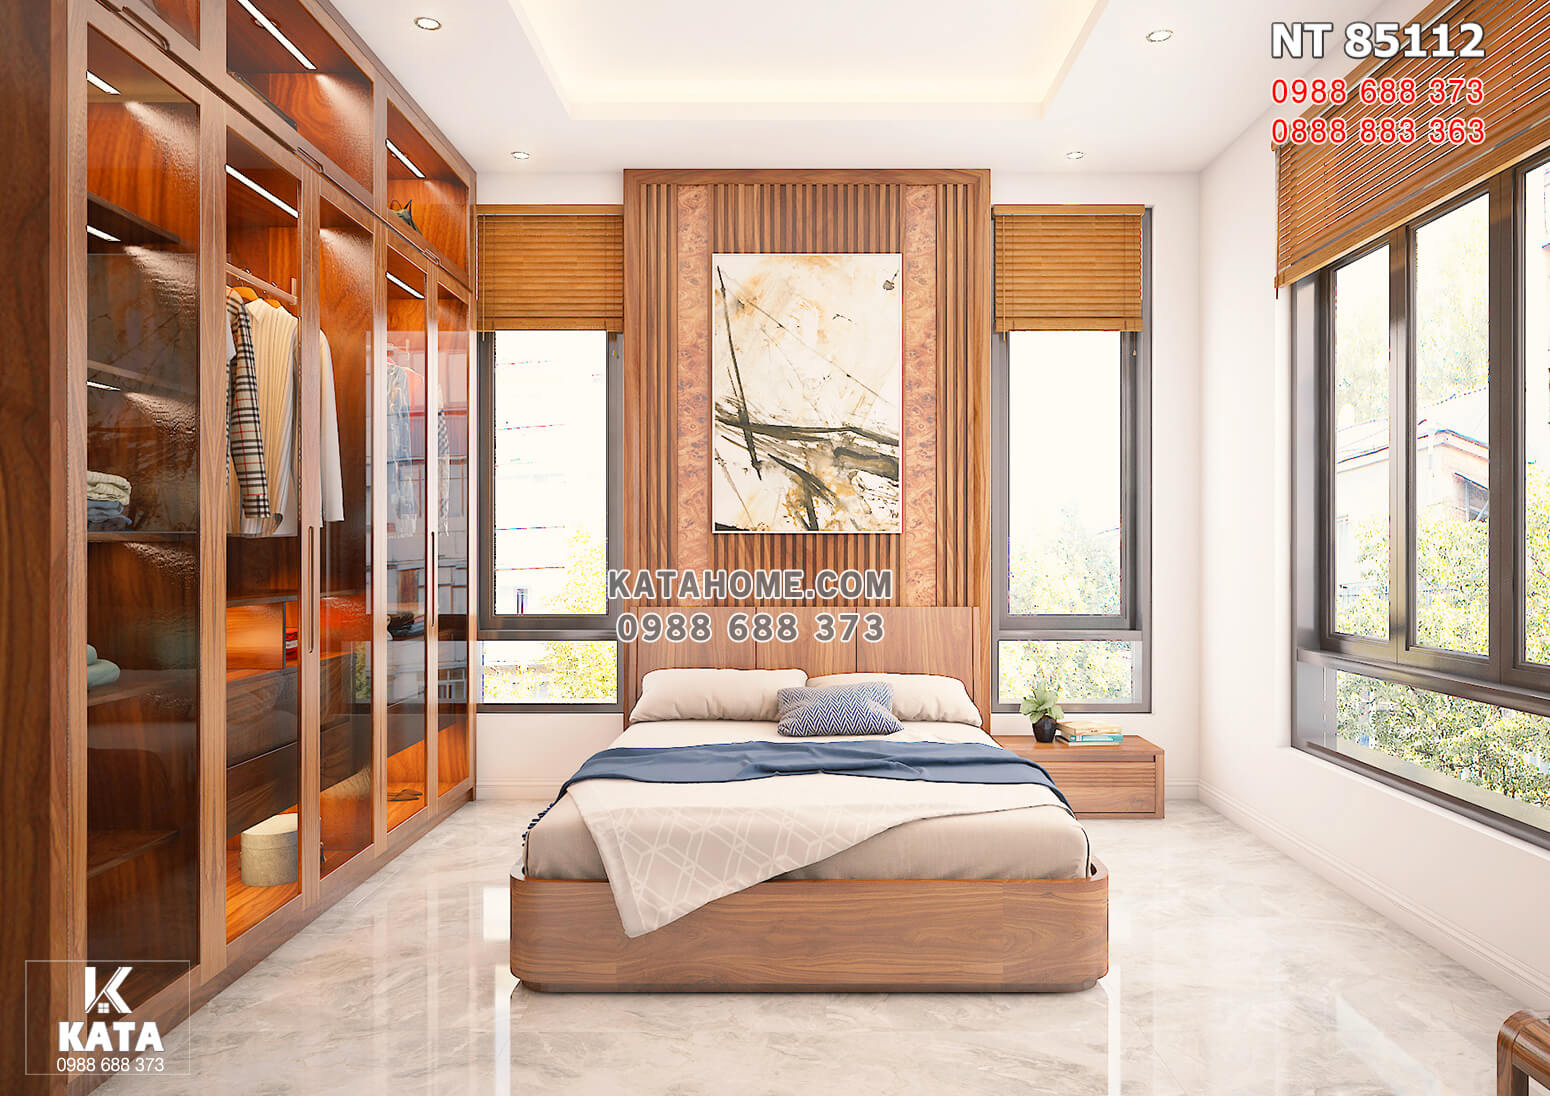 Hình ảnh: Không gian phòng ngủ được thiết kế bằng gỗ óc chó